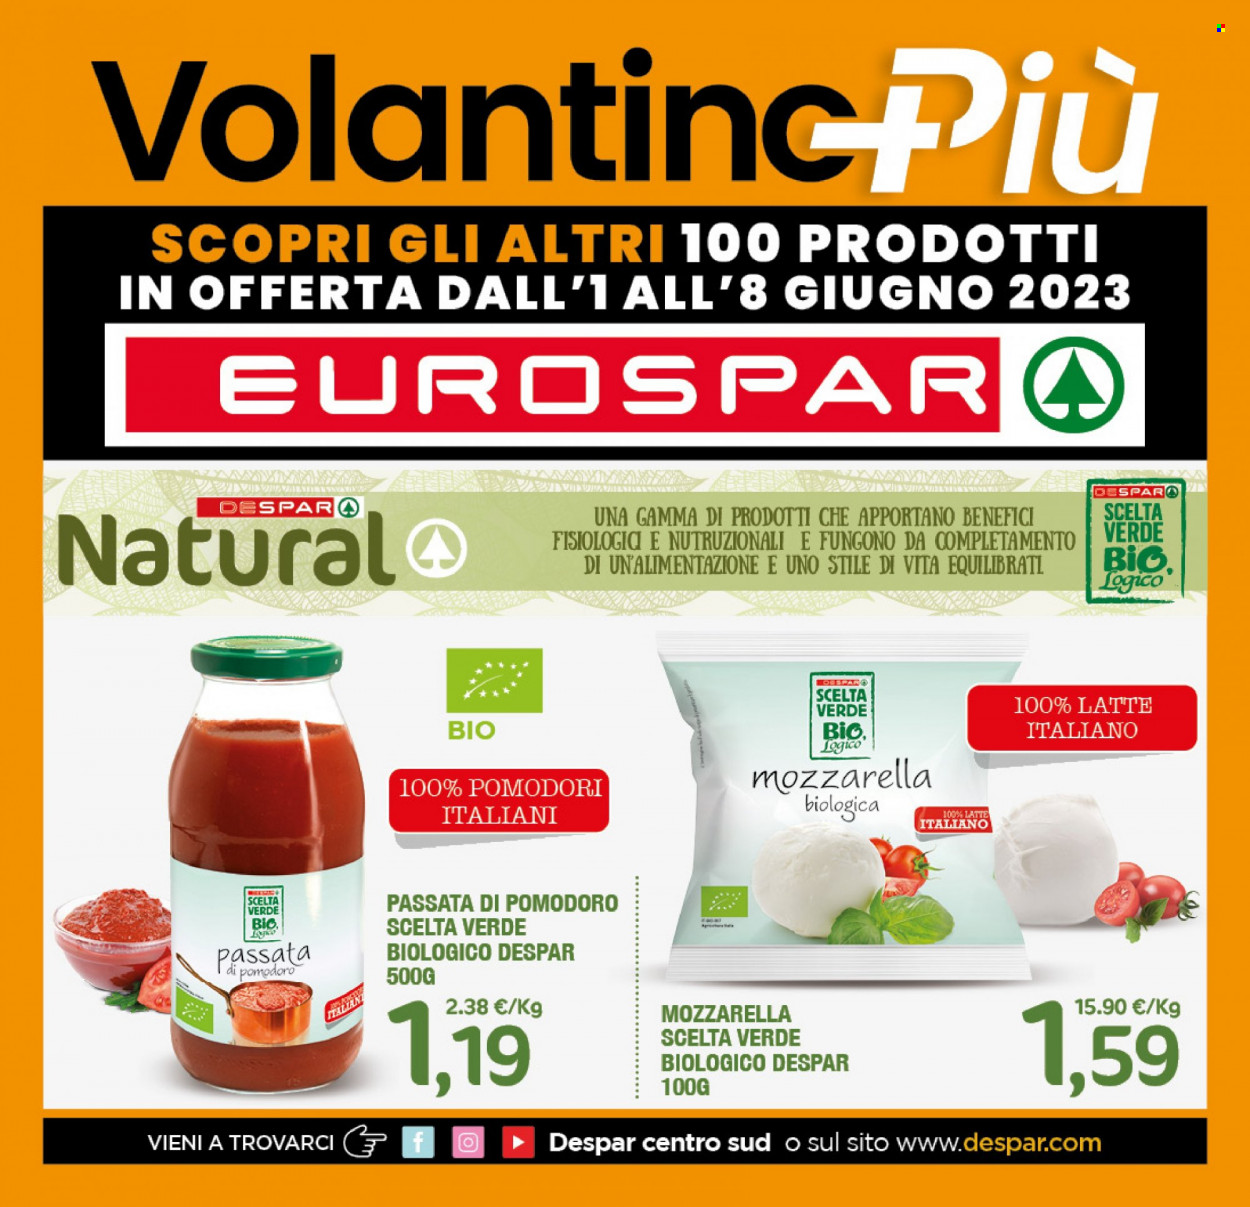 Volantino Eurospar - 1.6.2023 - 8.6.2023.